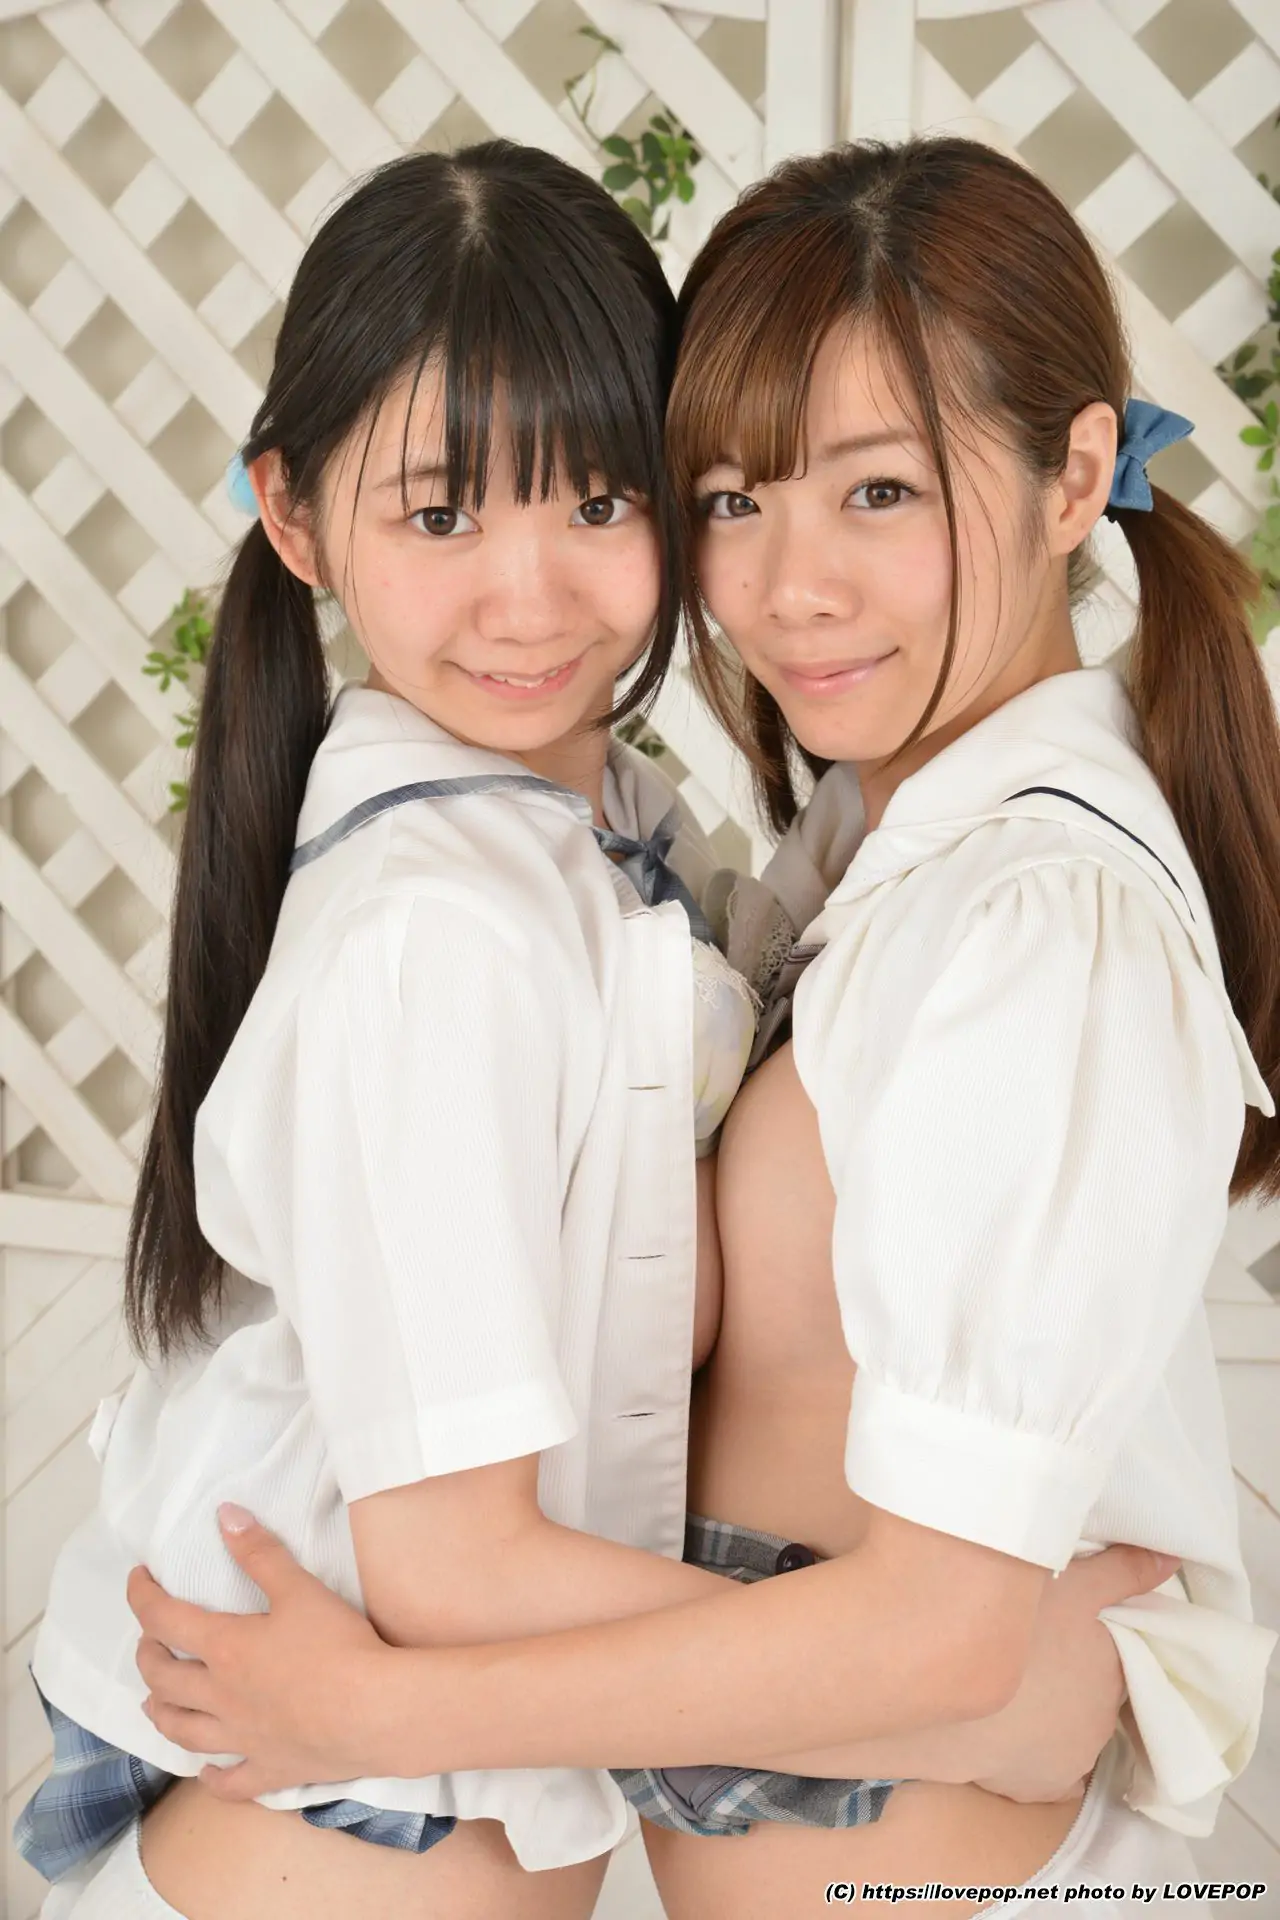 [LOVEPOP] Yuzuka Shirai&Sana Moriho 白井ゆずか&森保さな Photoset 01